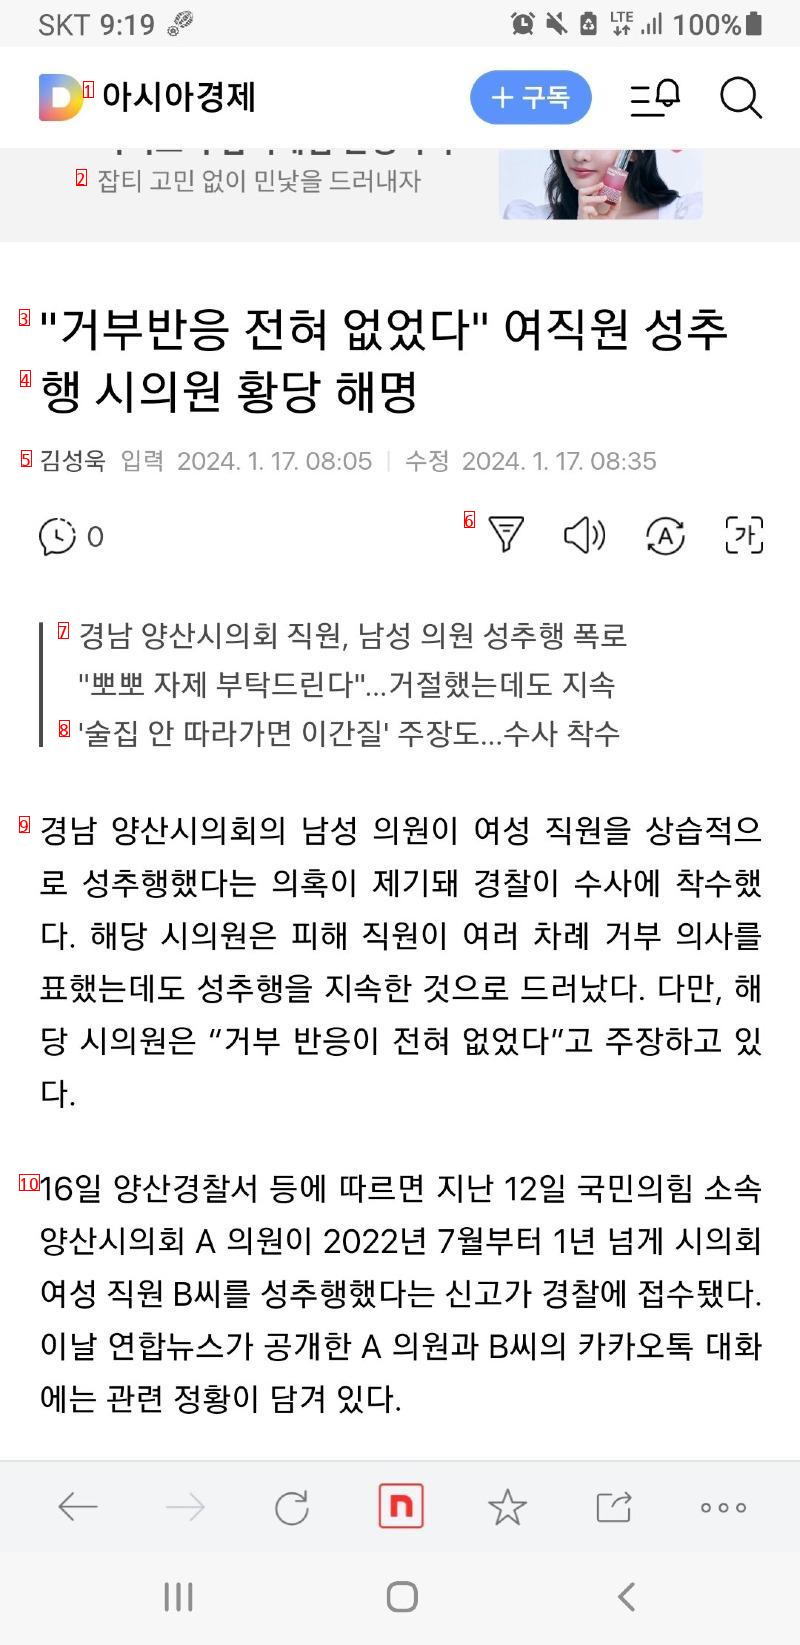 """"거부반응 전혀 없었다"""" 여직원 성추행 시의원 황당 해명